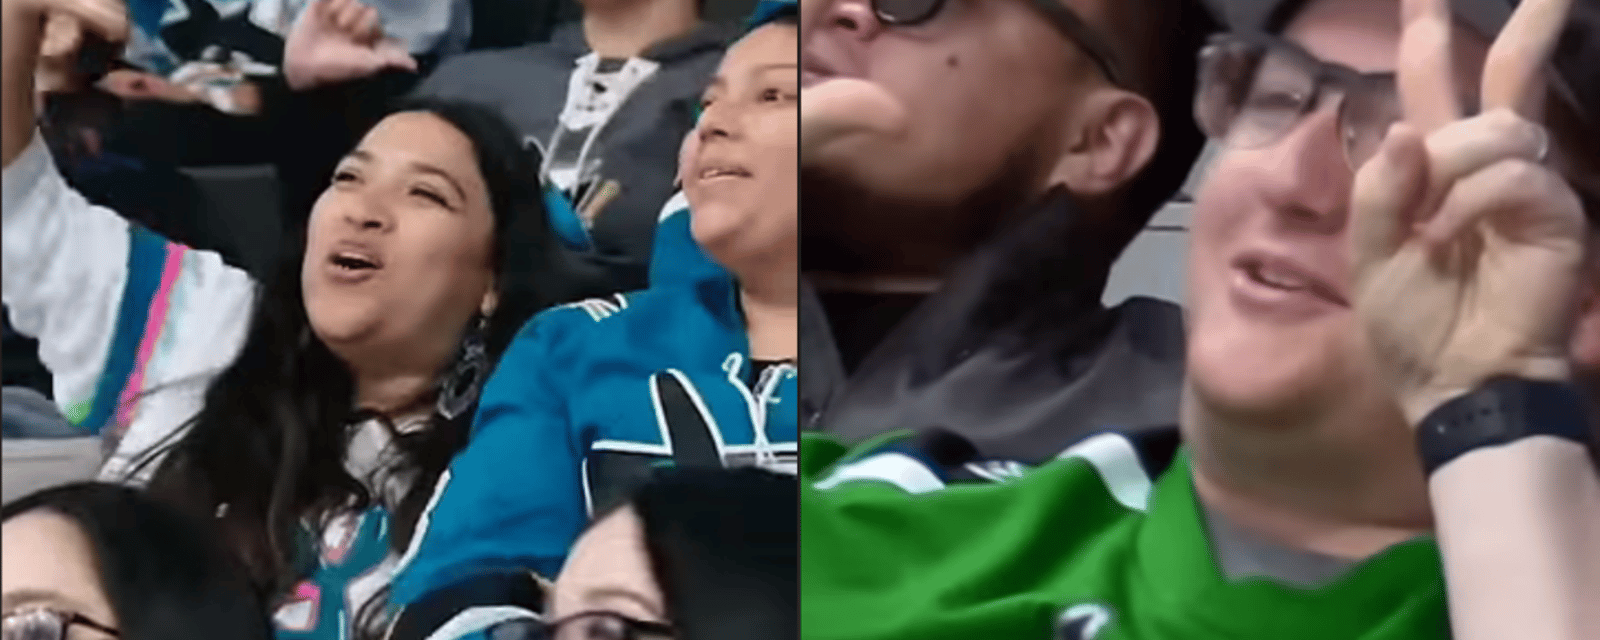 NHL fans publicly shamed during San Jose Sharks game.